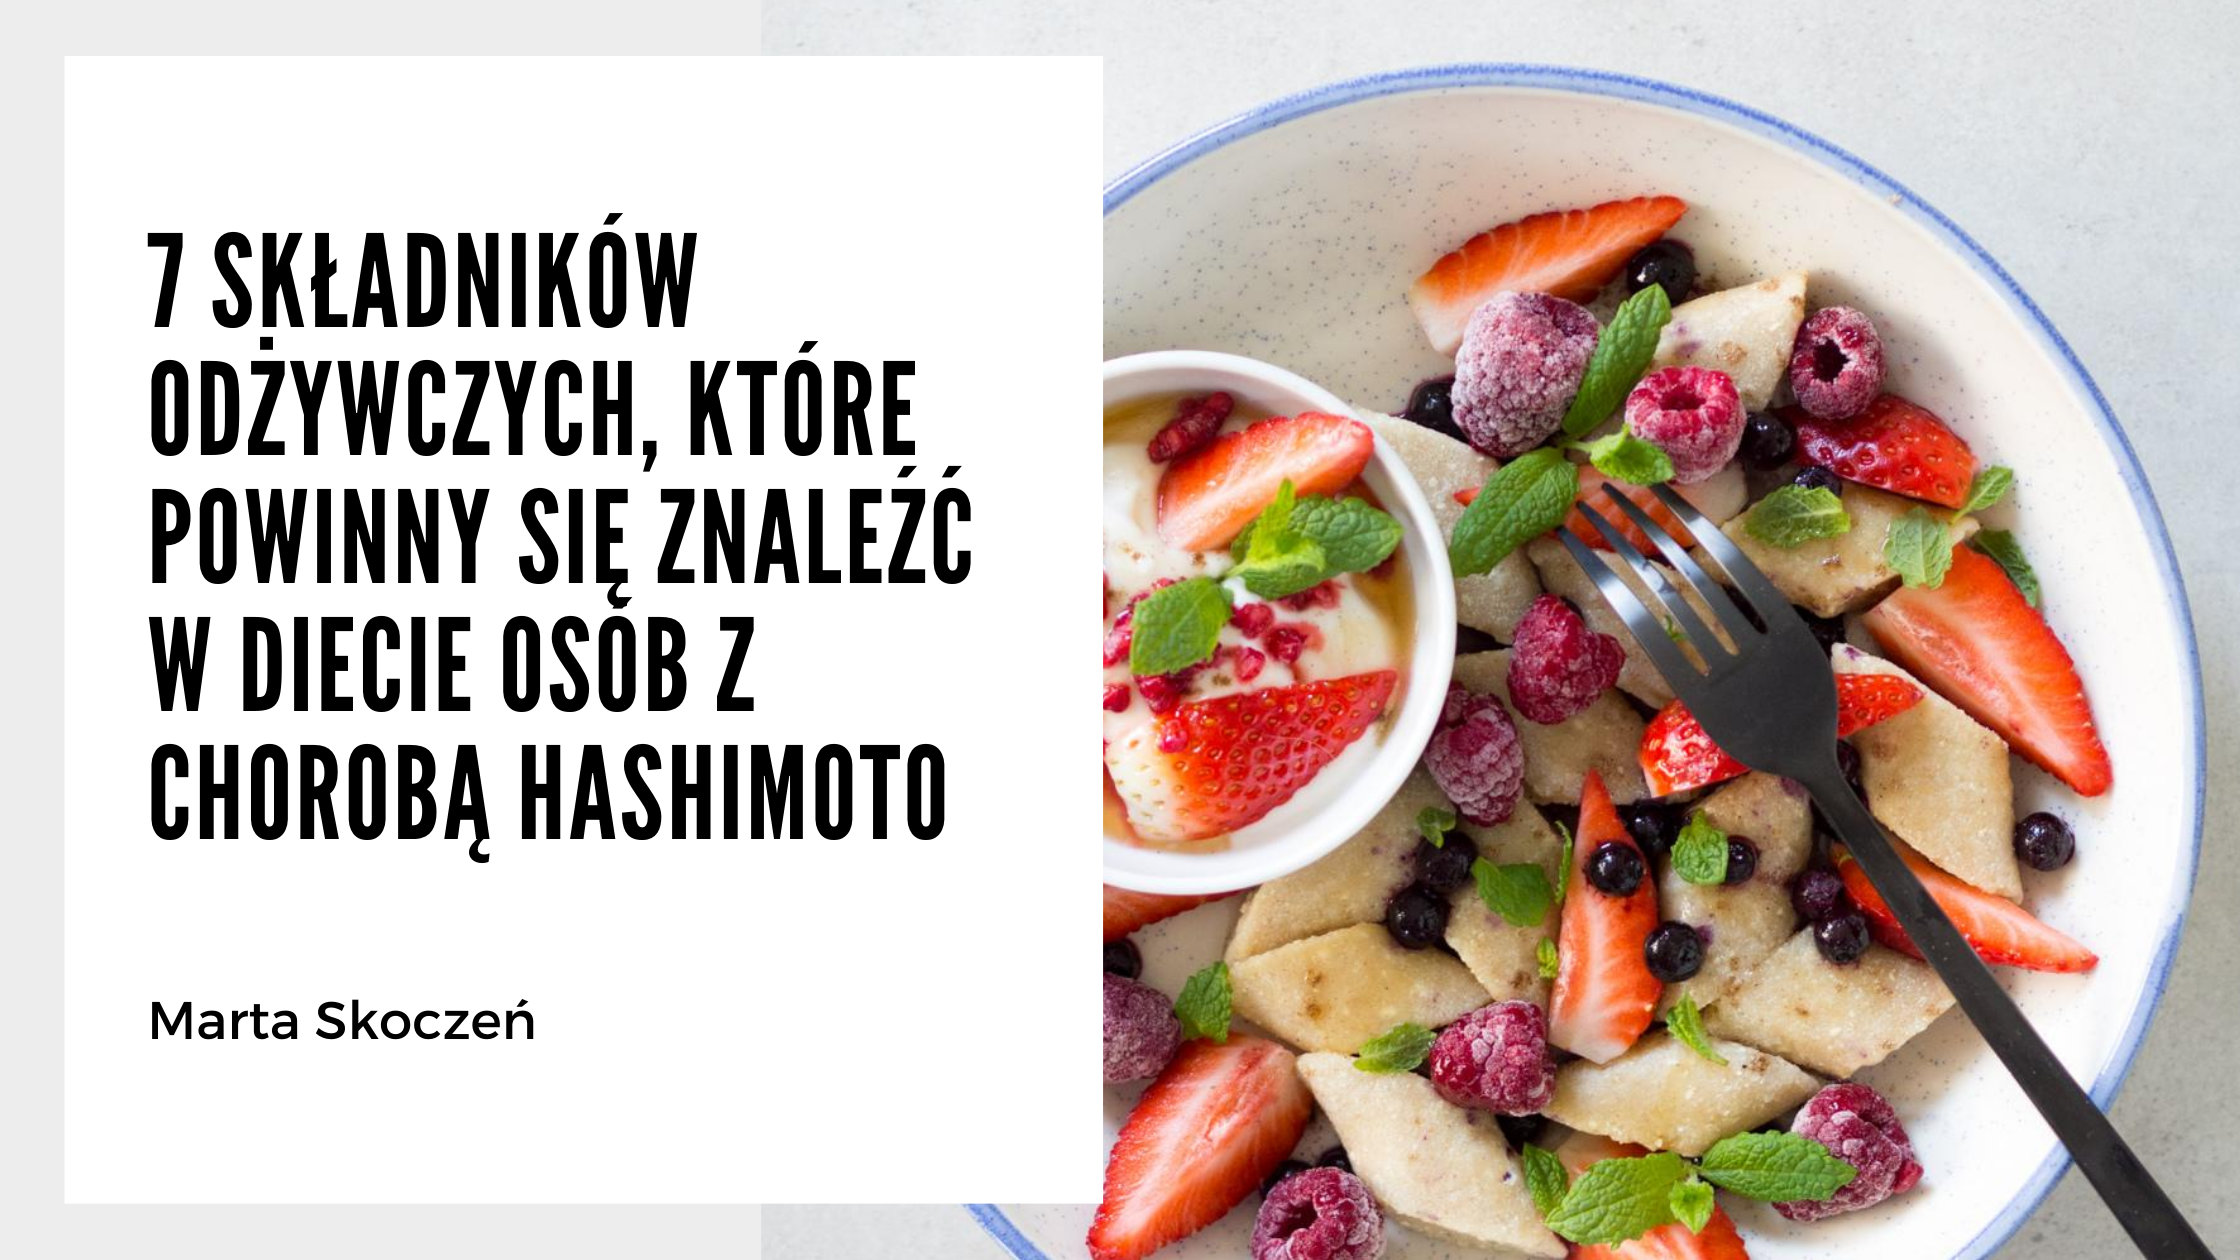 7 składników odżywczych, które powinny się znaleźć w diecie osób z Hashimoto